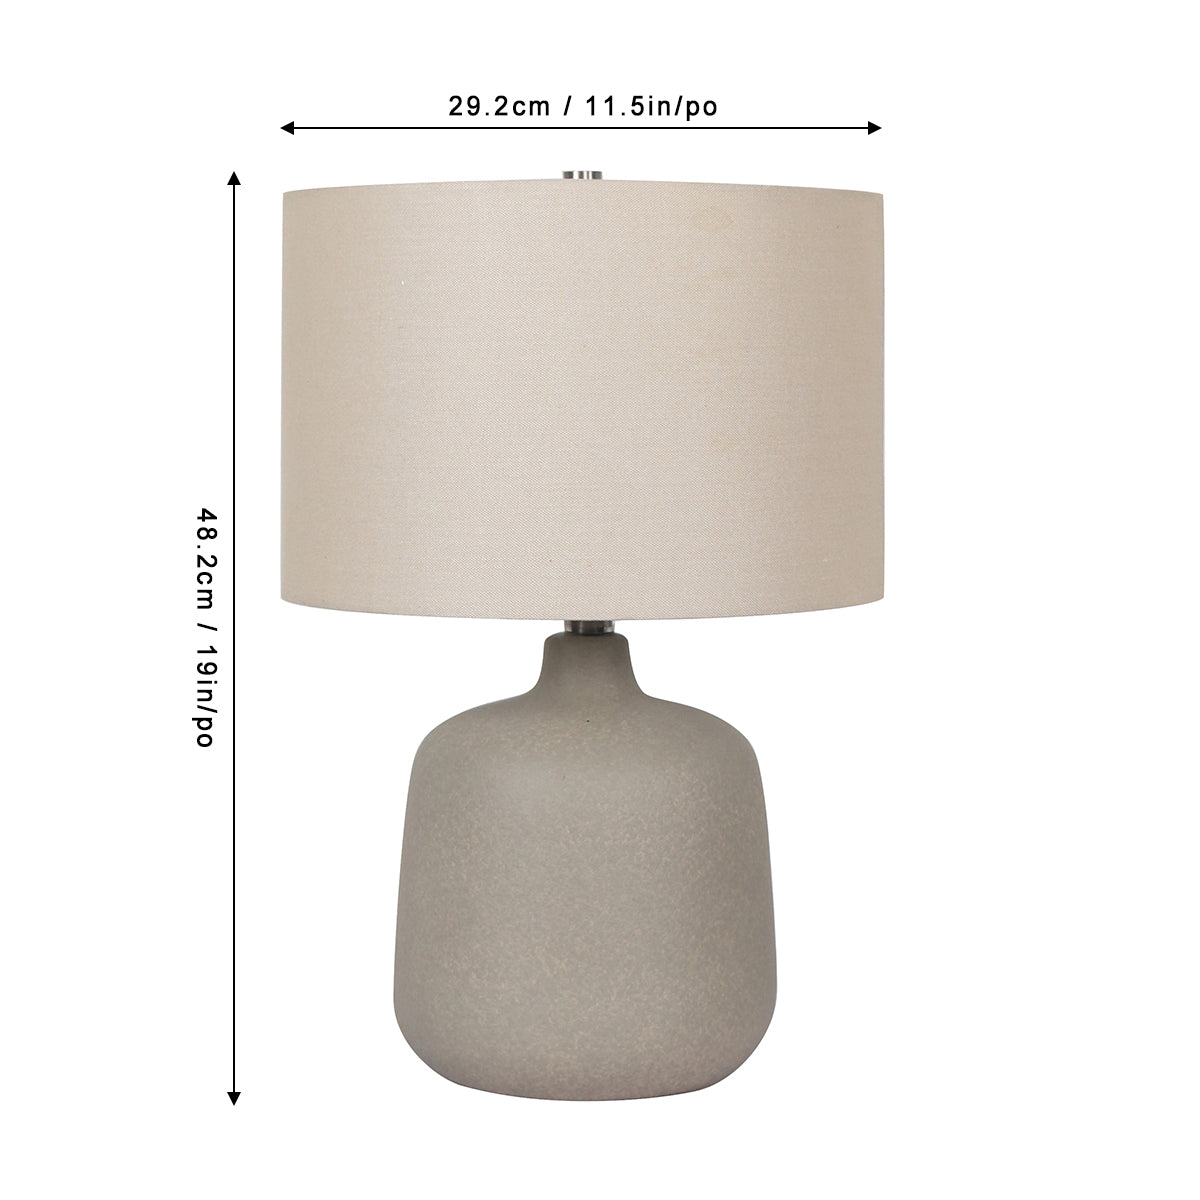 Norlan 19" Table Lamp